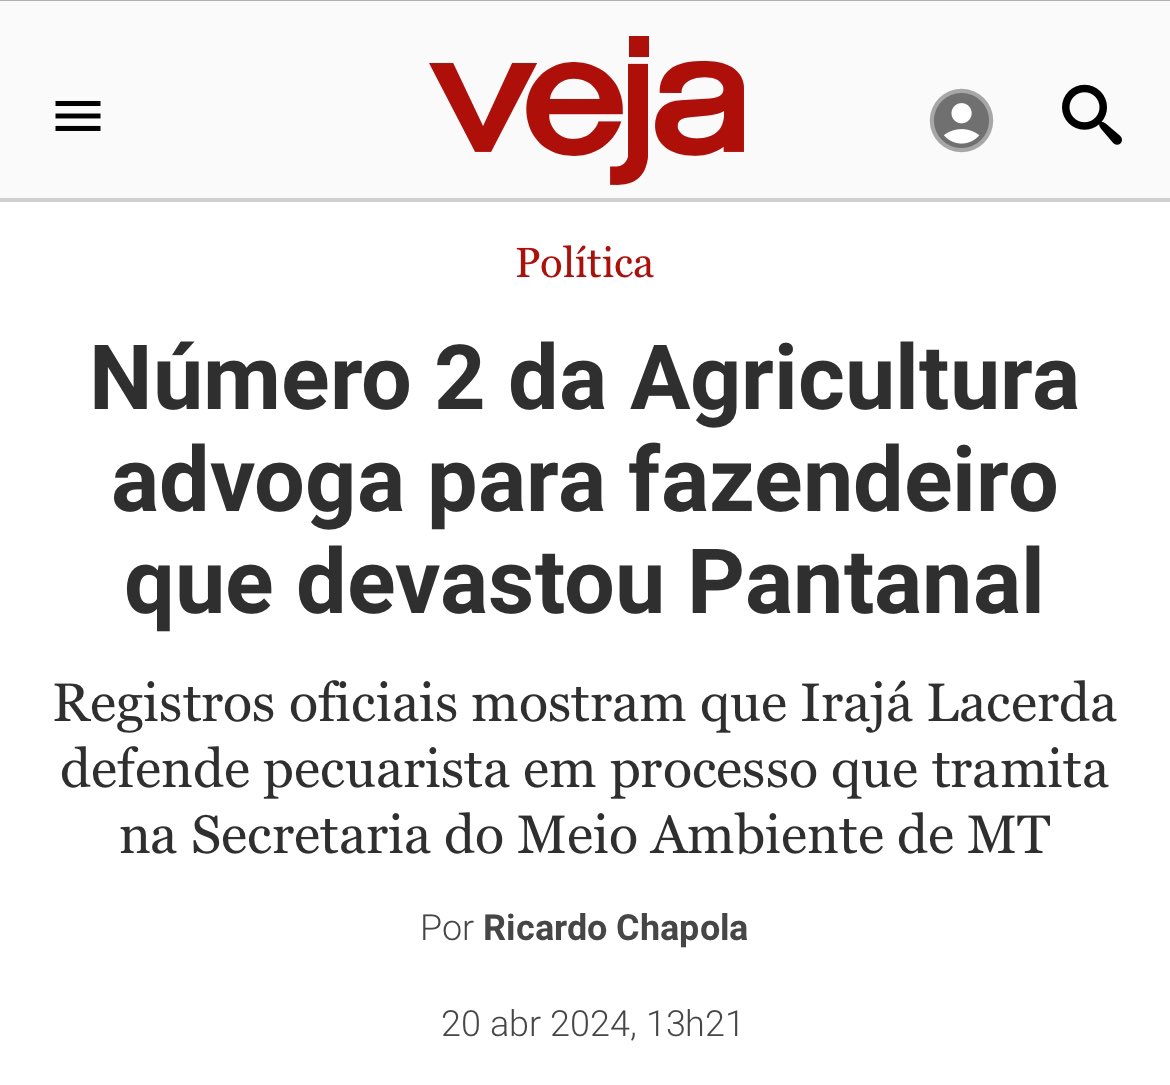 “Registros oficiais mostram que Irajá Lacerda defende pecuarista em processo que tramita na Secretaria do Meio Ambiente de MT” veja.abril.com.br/politica/numer…